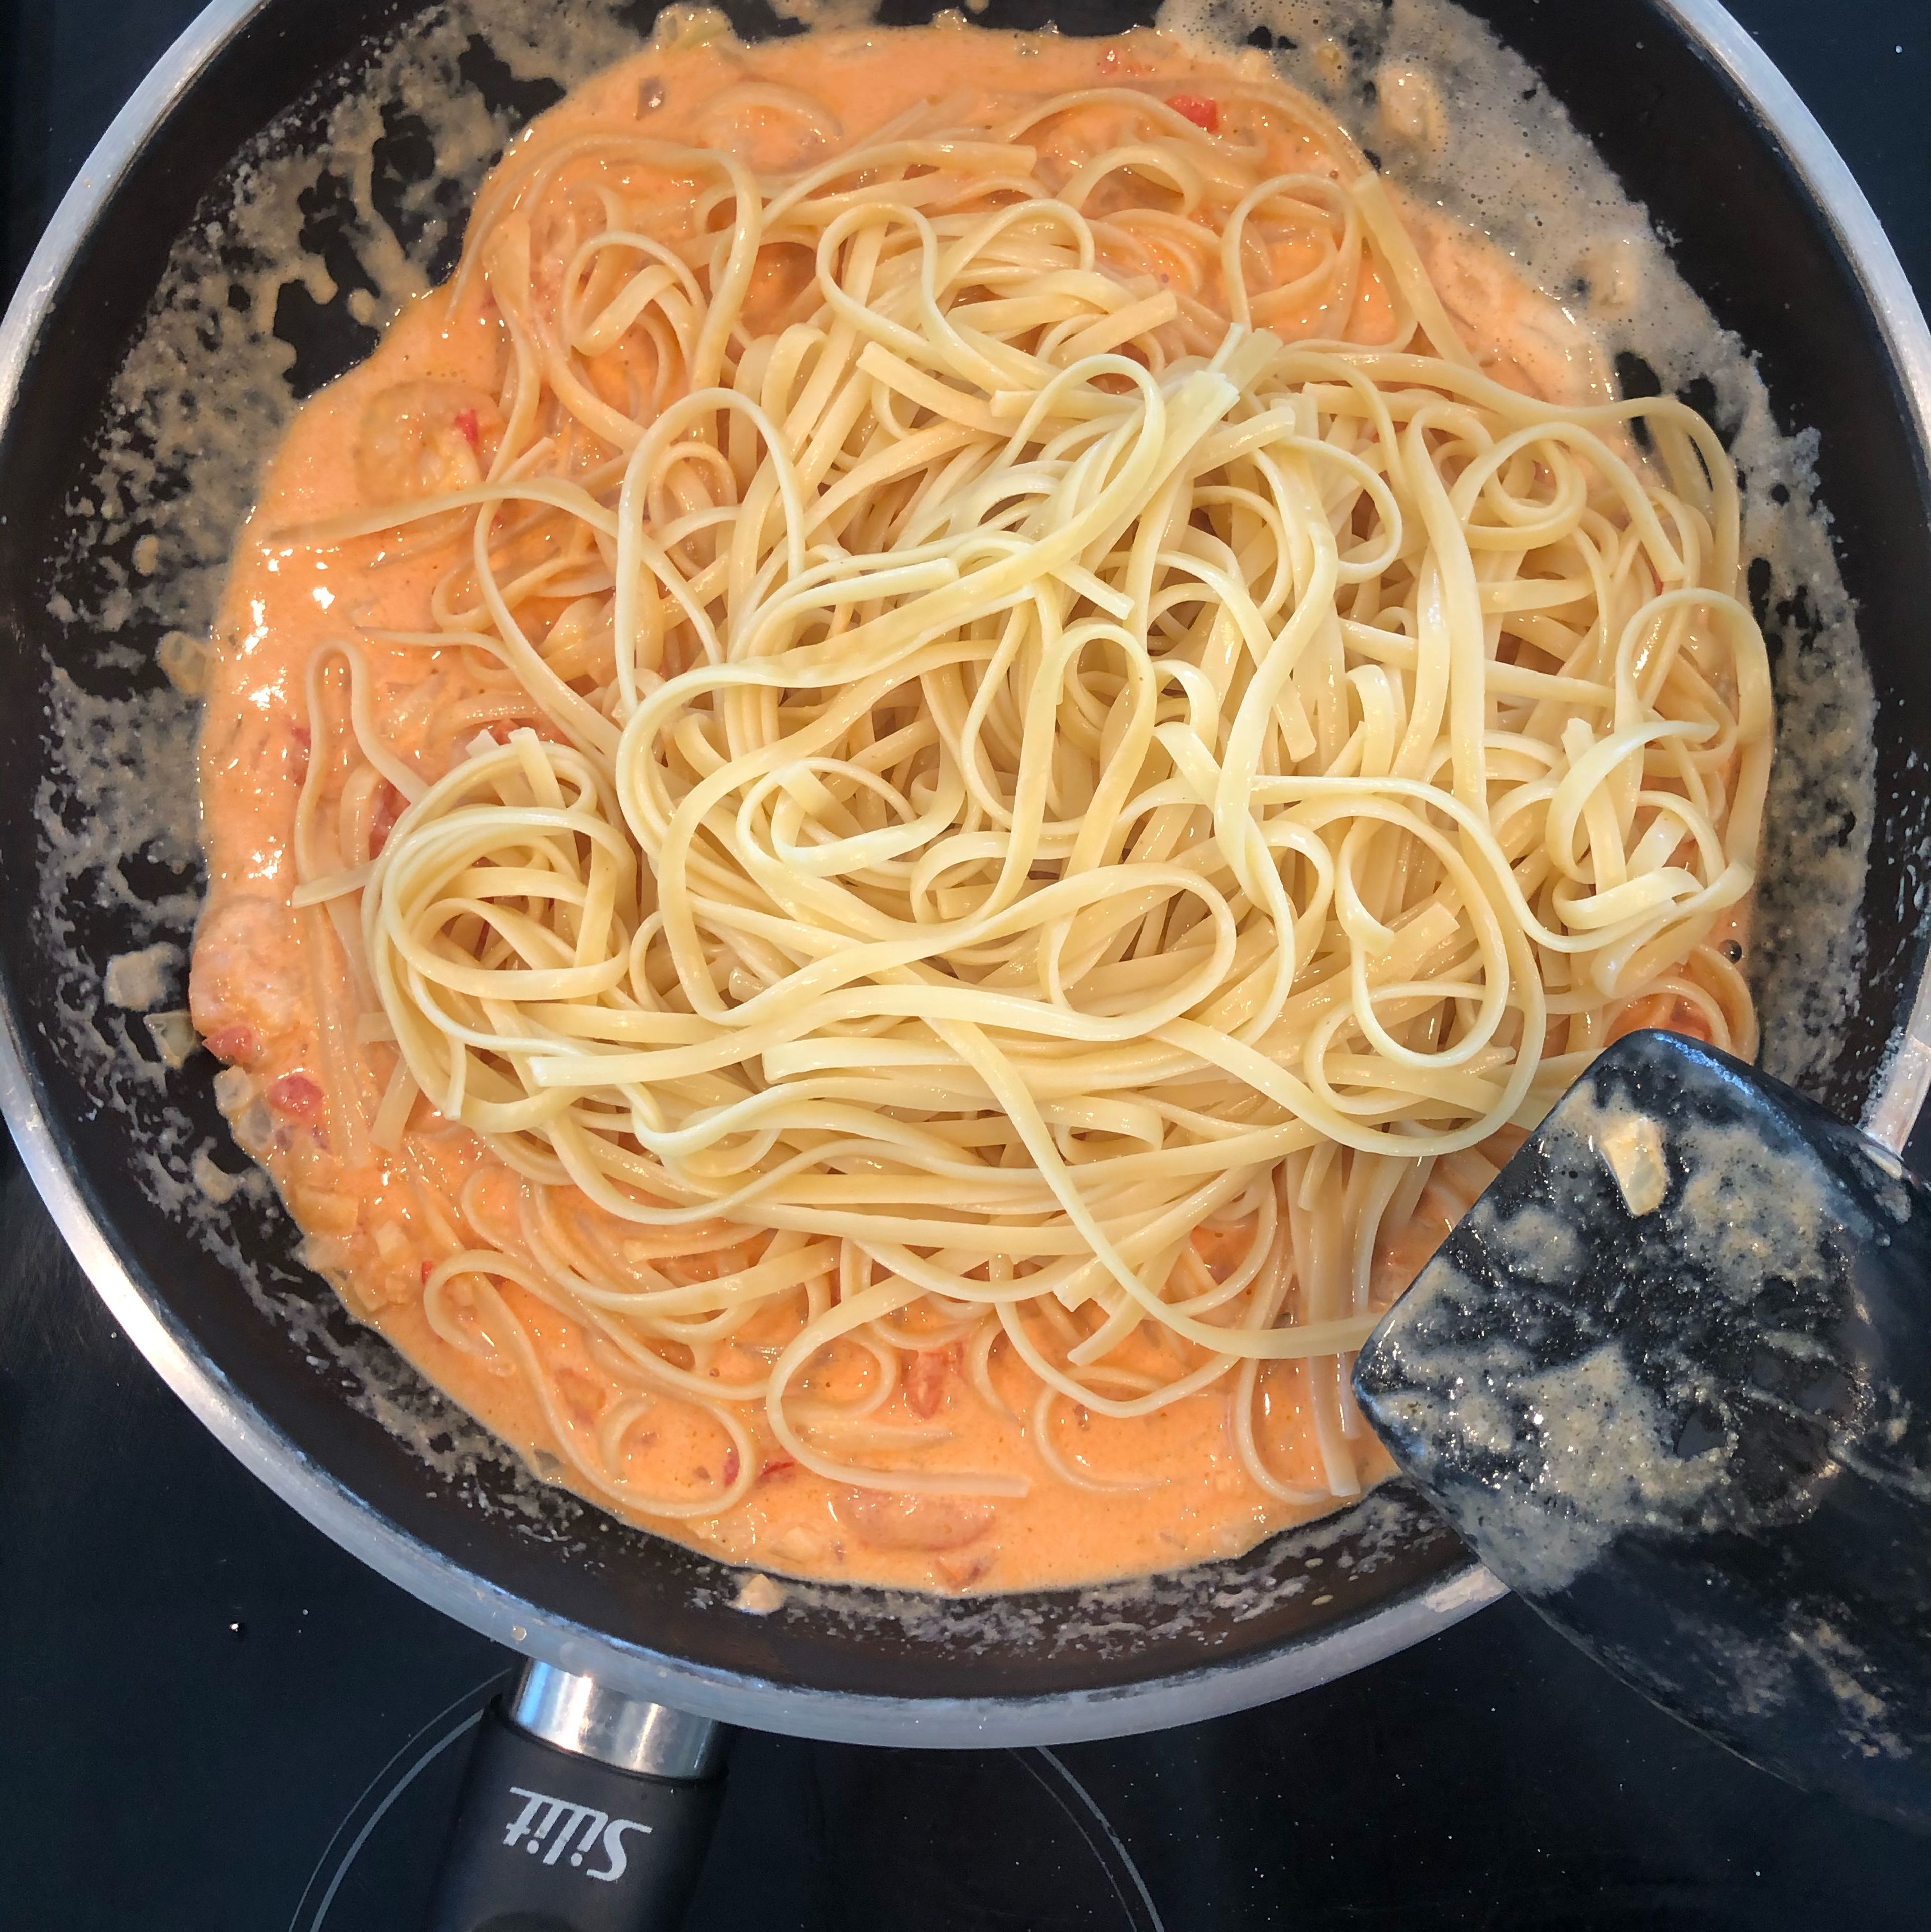 Die Spaghetti in die Pfanne geben, vermengen und mit Parmesan servieren!